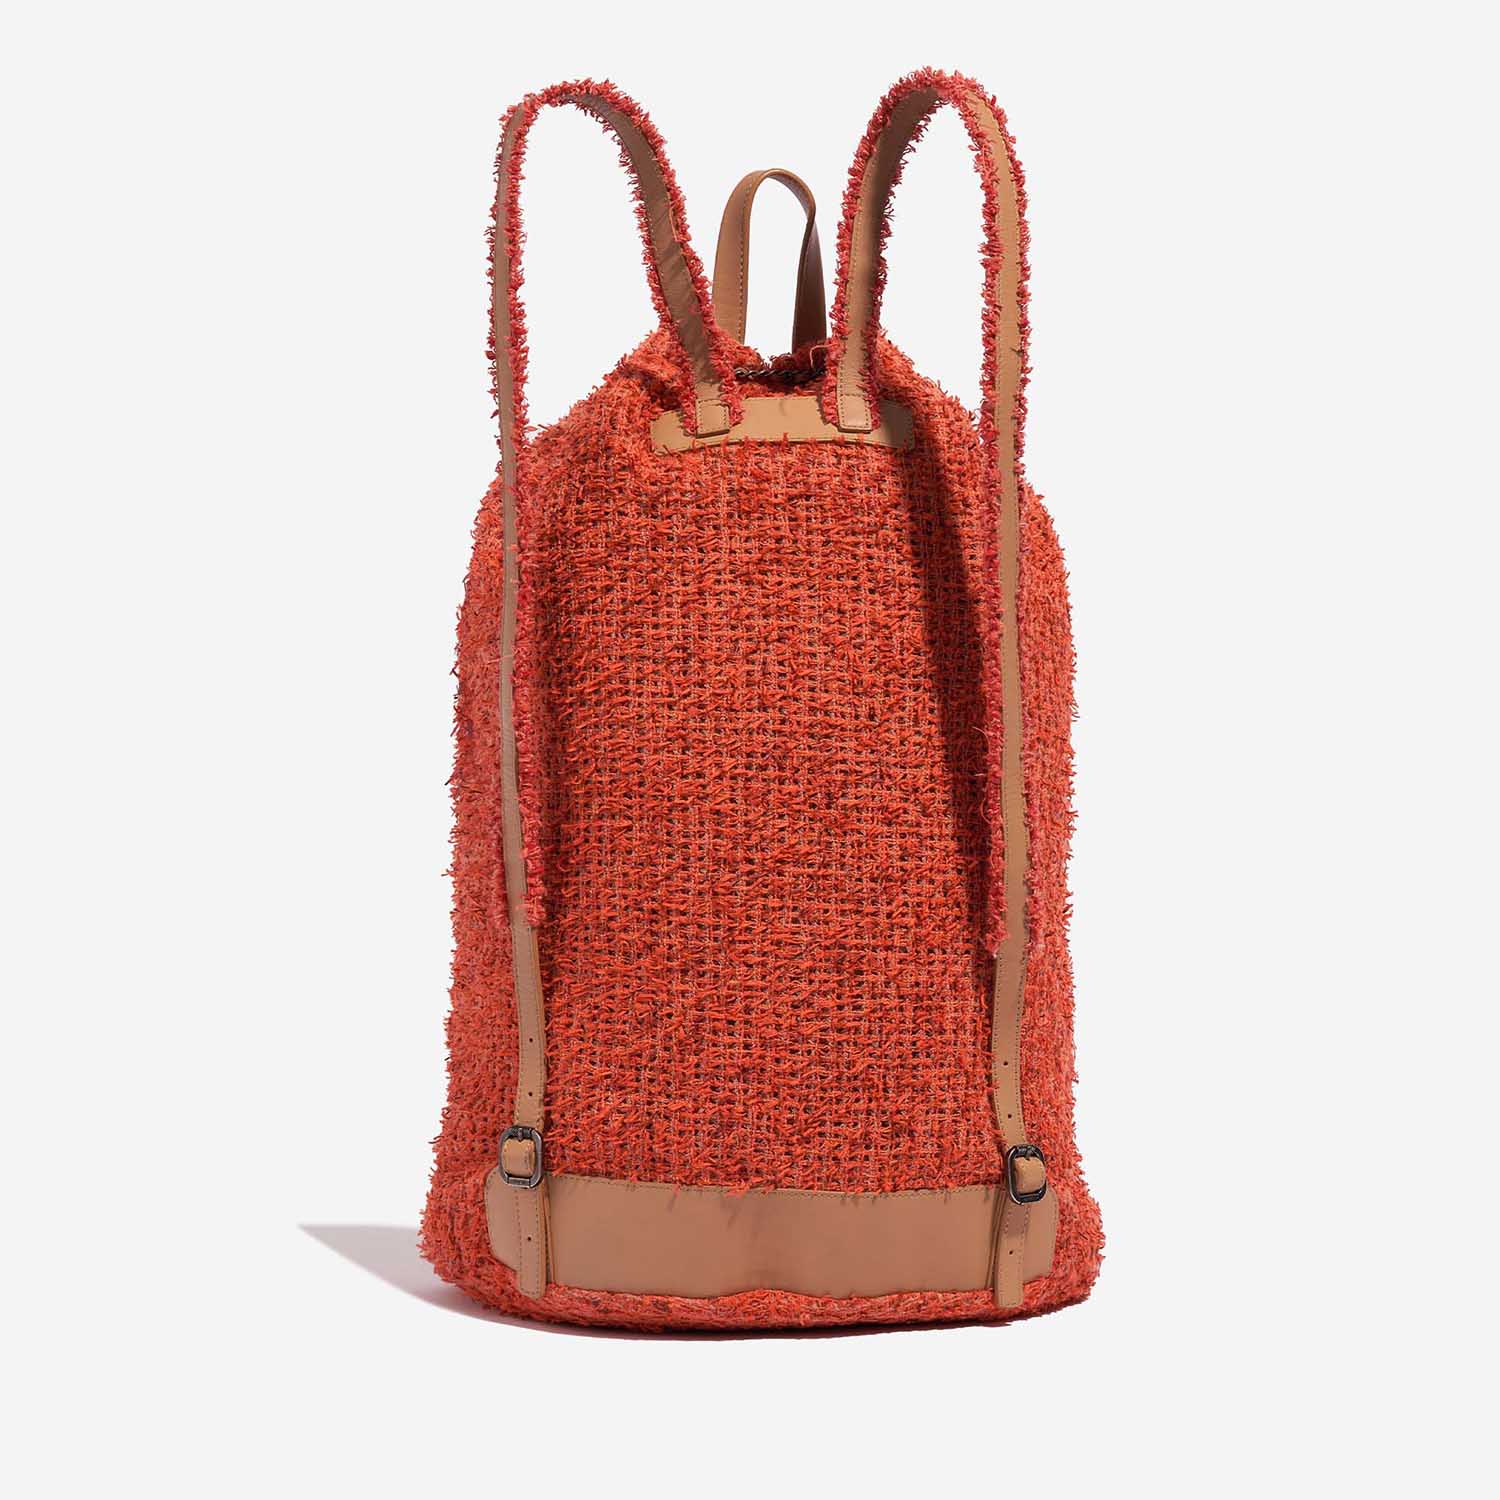 Pre-owned Chanel bag Coco Club Backpack Tweed / Canvas / Sequins Orange / Beige / Black Orange Back | Sell your designer bag on Saclab.com